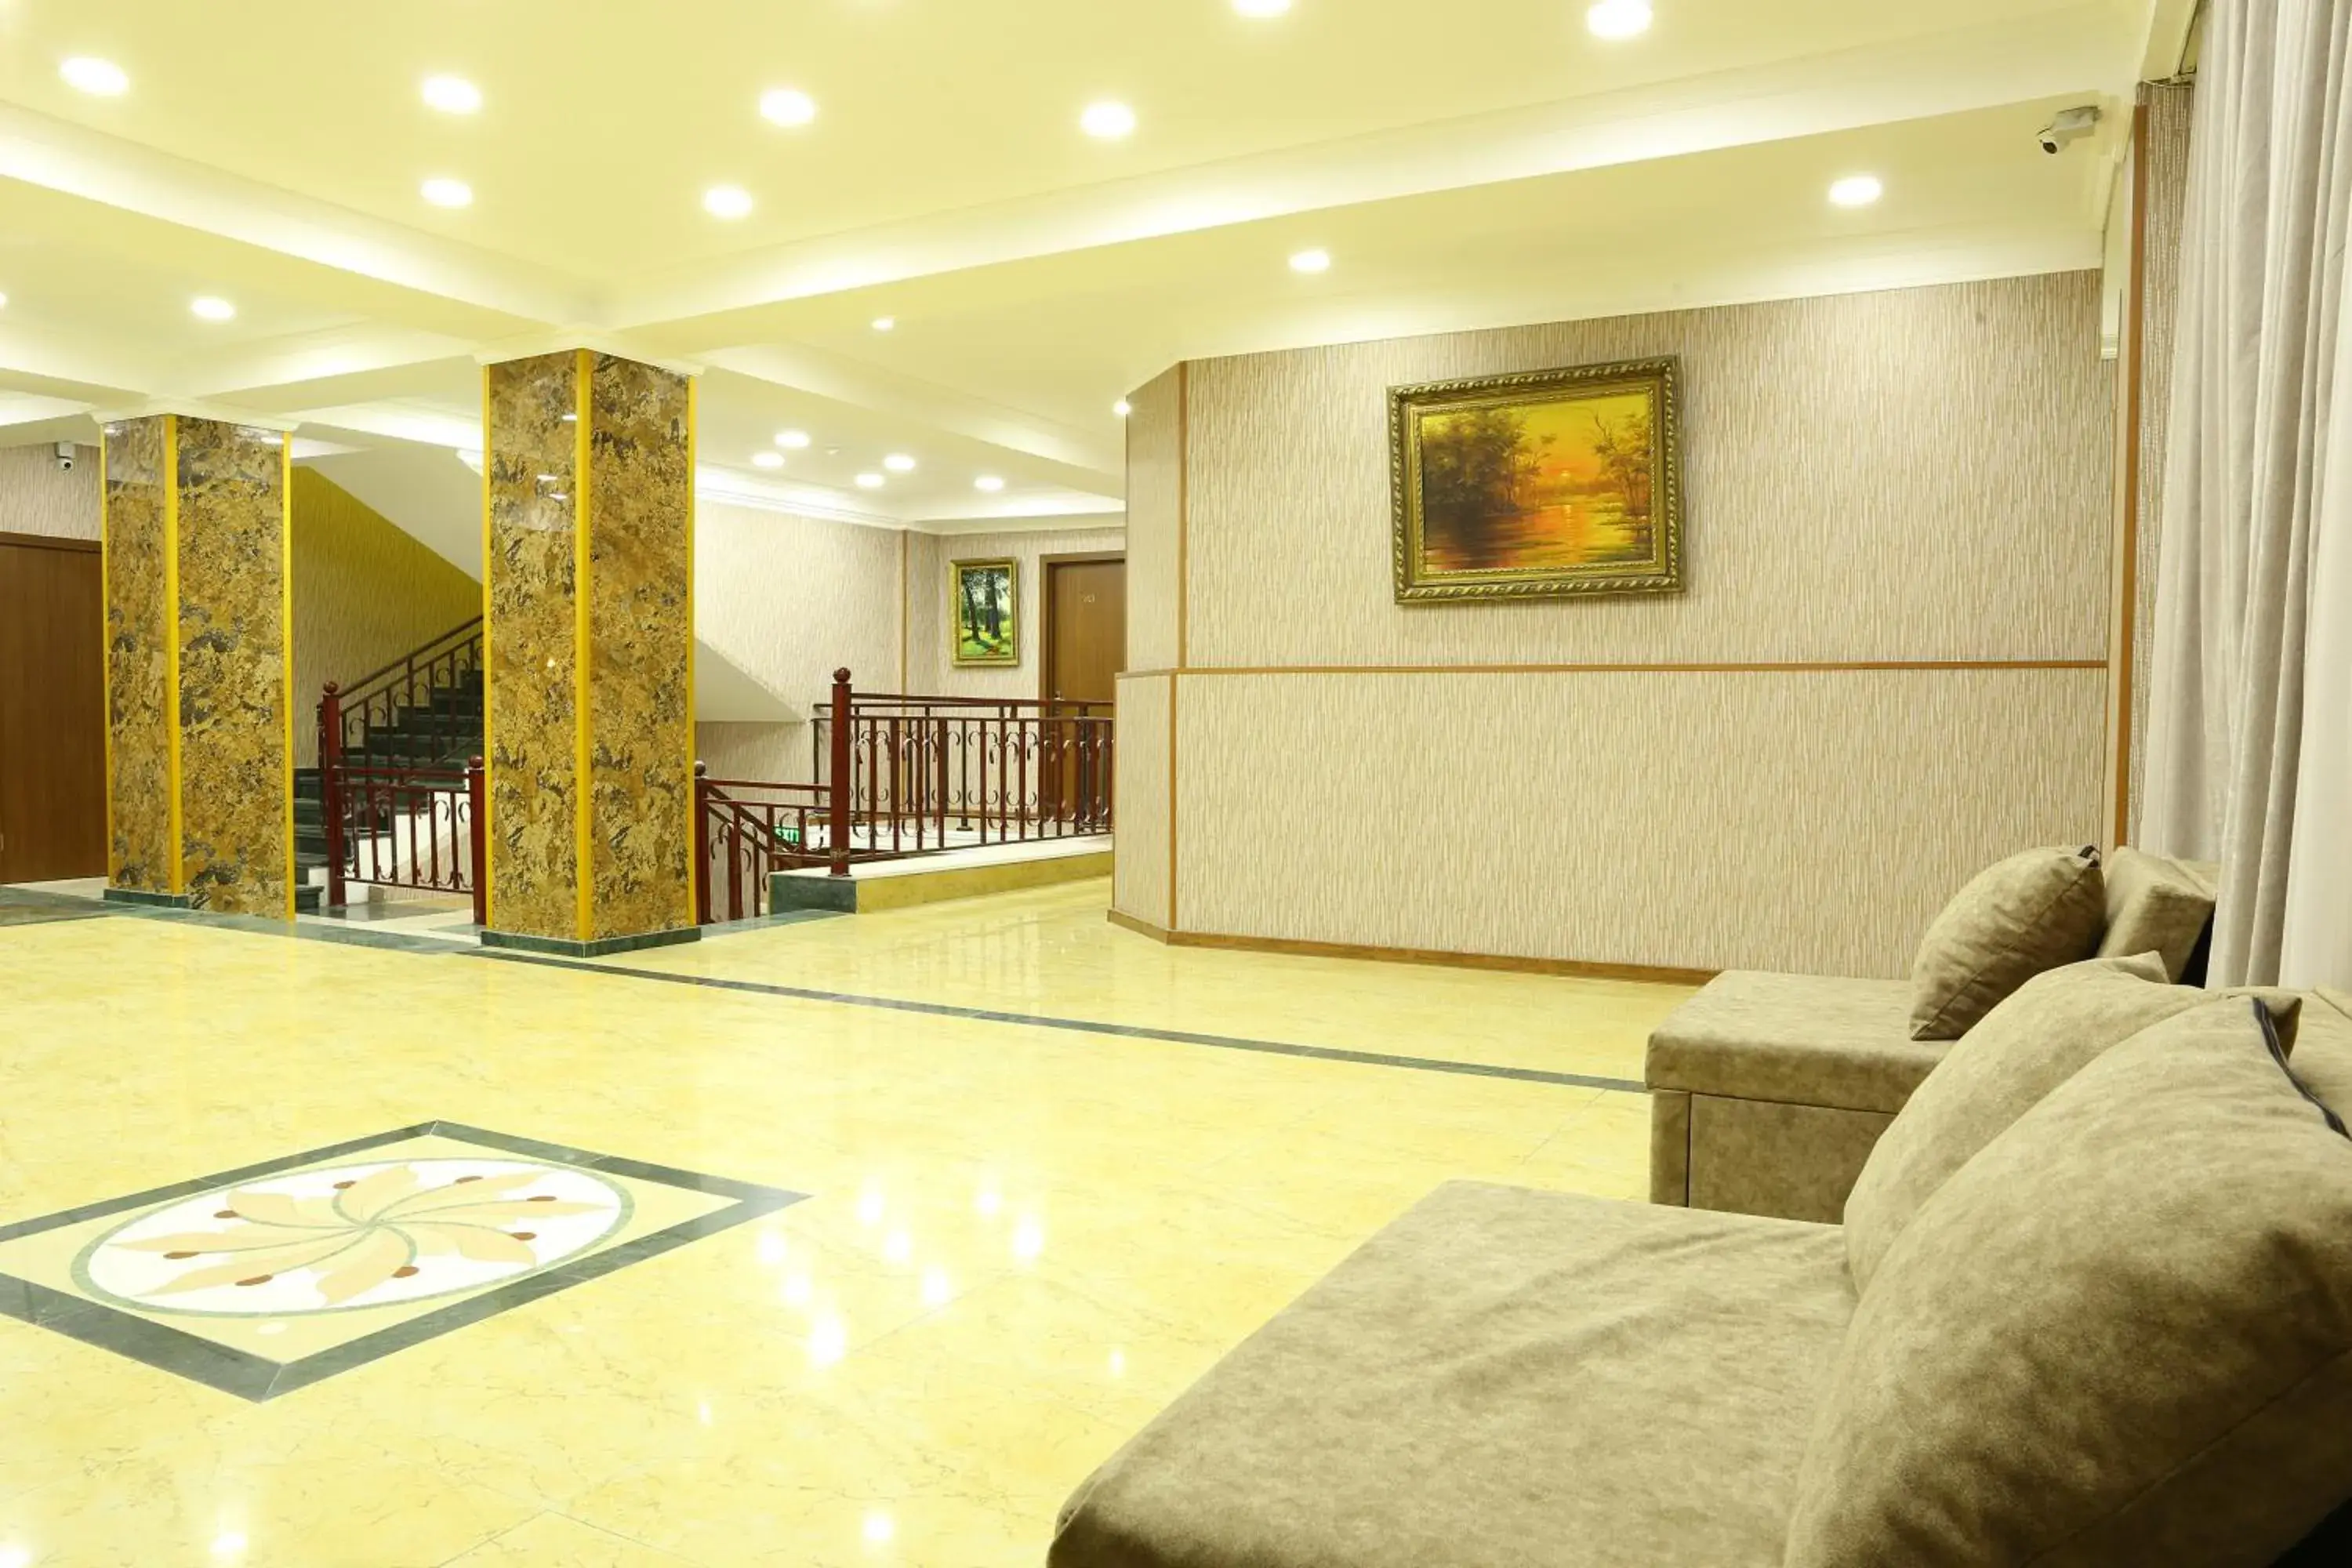 Lobby or reception, Lobby/Reception in Dkd-bridge Hotel